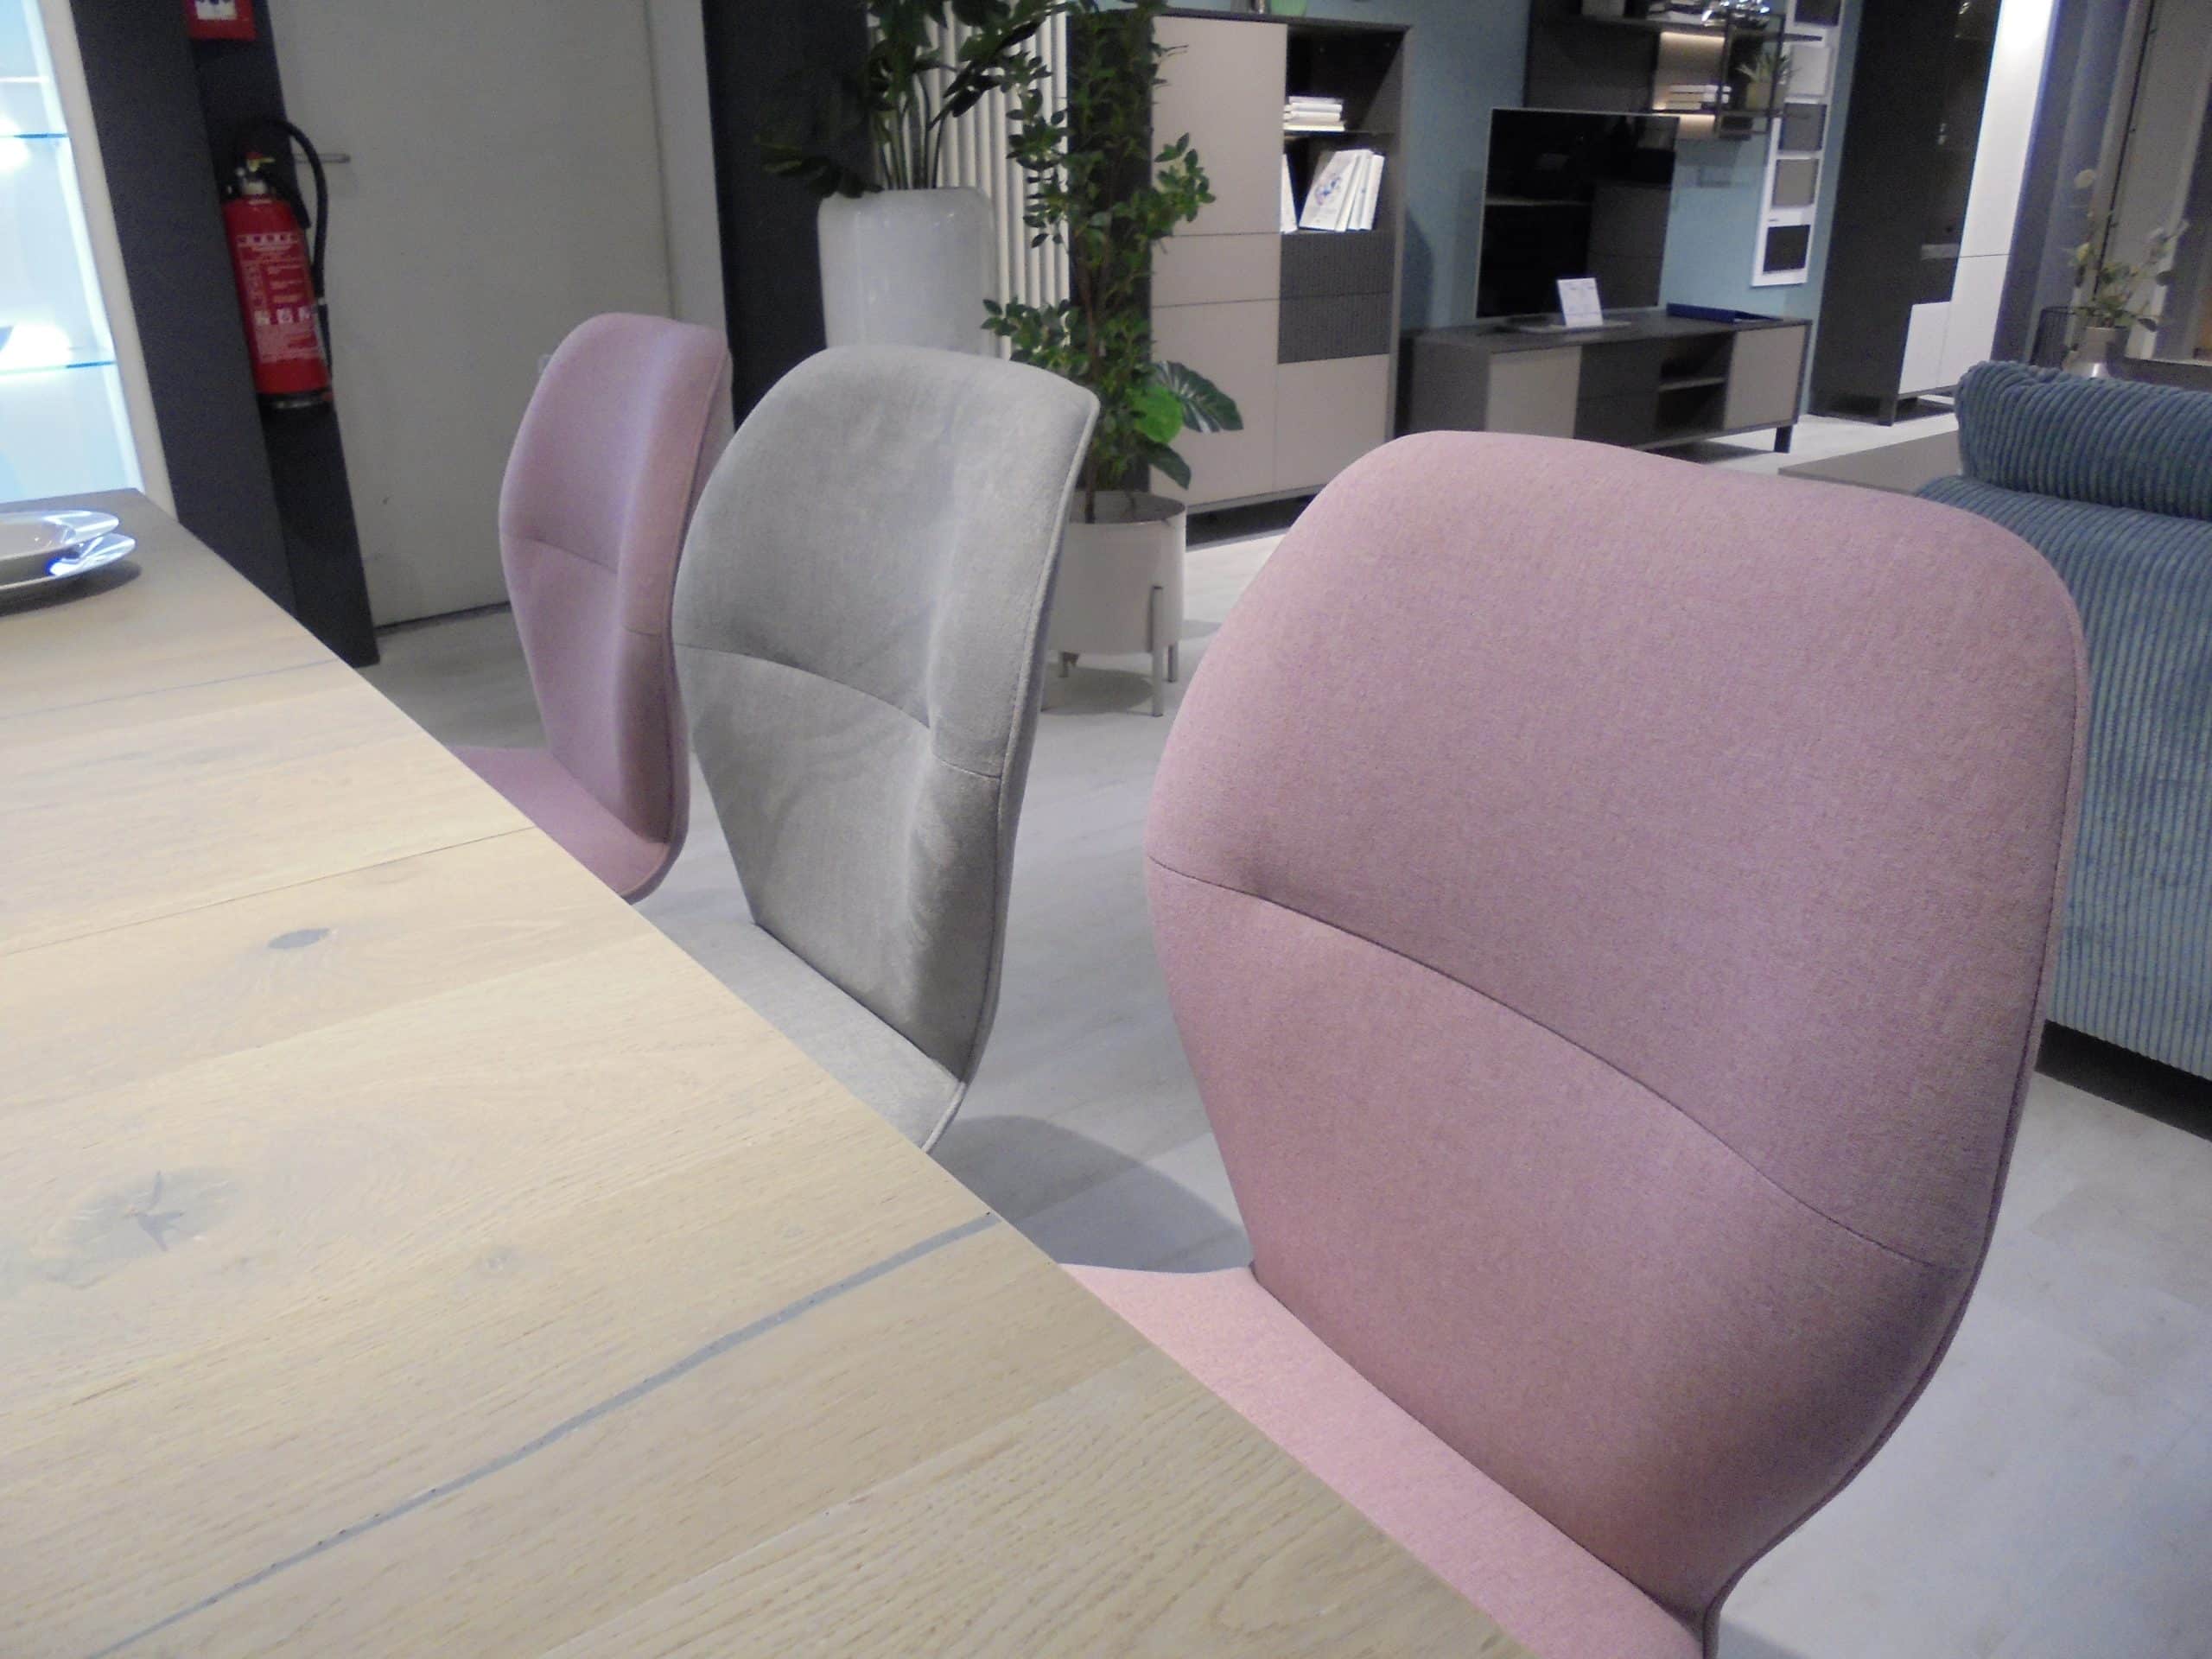 Tischgruppe Viviano/Merlot bestehend aus Esstisch 90 x 160/205 cm und 8 Stühlen mit Gestell schwarz bei Möbel Thiex im Abverkauf über 39 % reduziert.